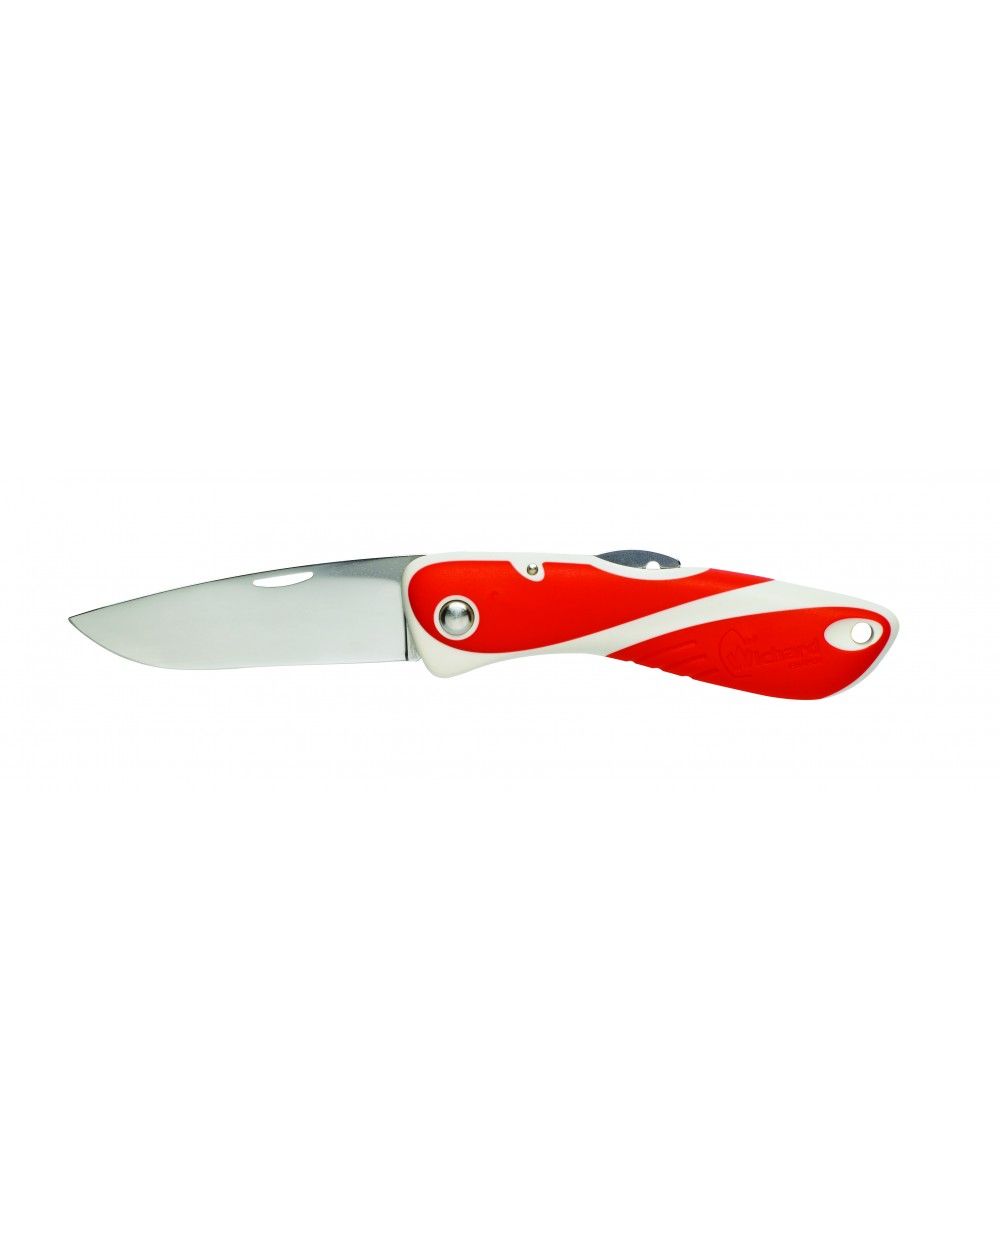 Couteau Aquaterra Wichard avec manche rouge et blanc - Lame lisse